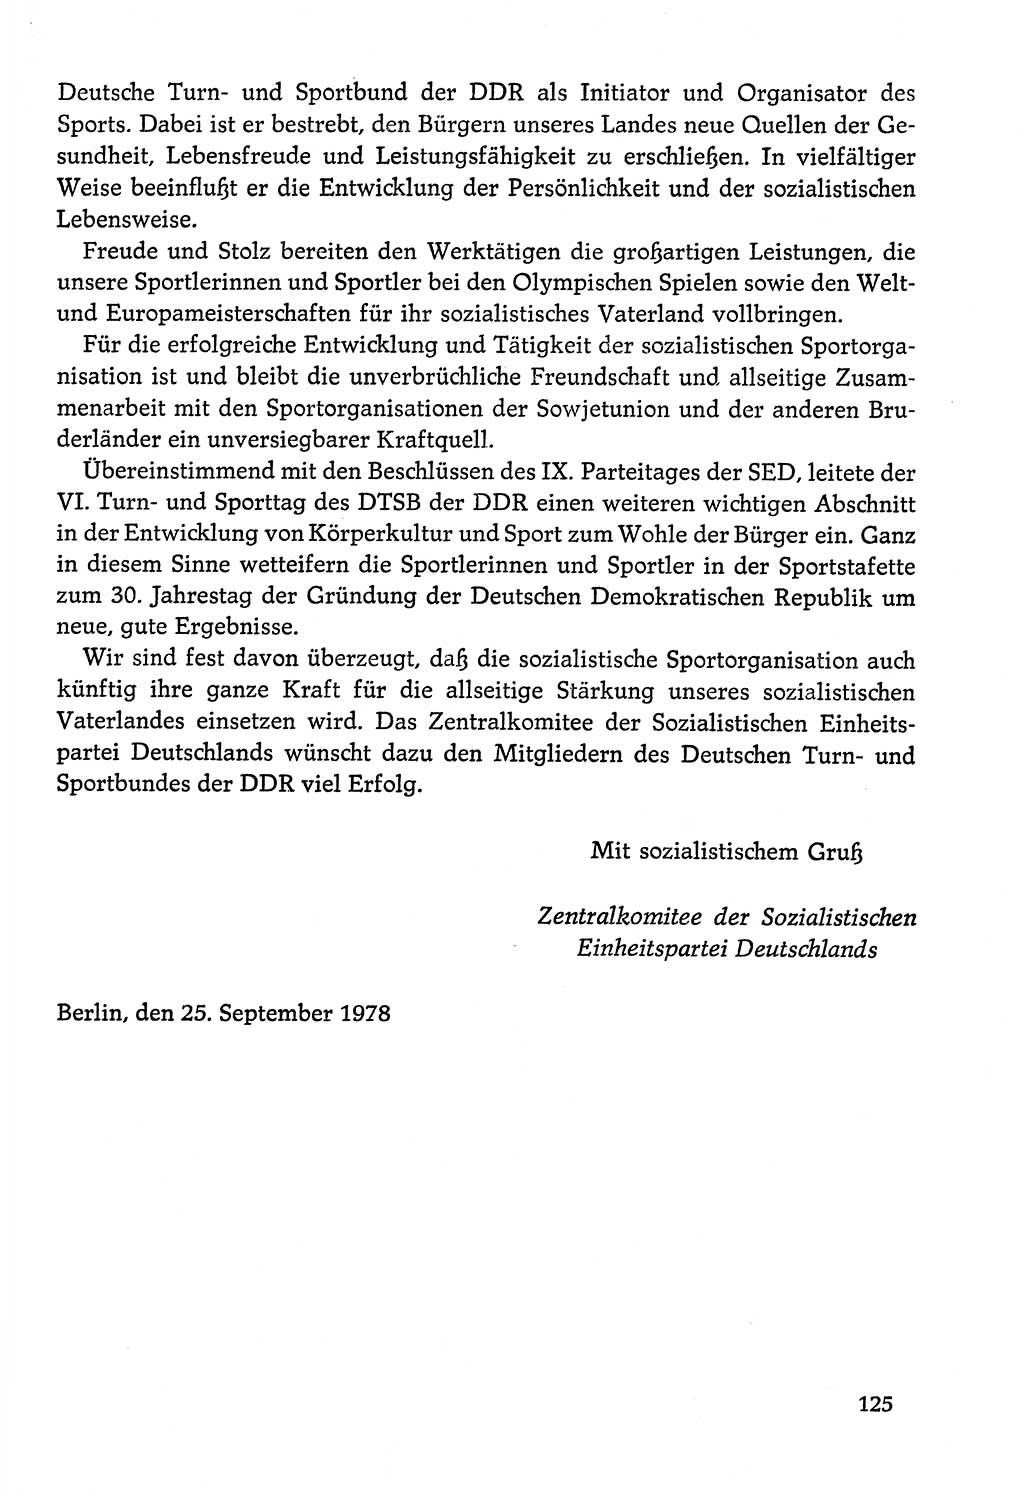 Dokumente der Sozialistischen Einheitspartei Deutschlands (SED) [Deutsche Demokratische Republik (DDR)] 1978-1979, Seite 125 (Dok. SED DDR 1978-1979, S. 125)